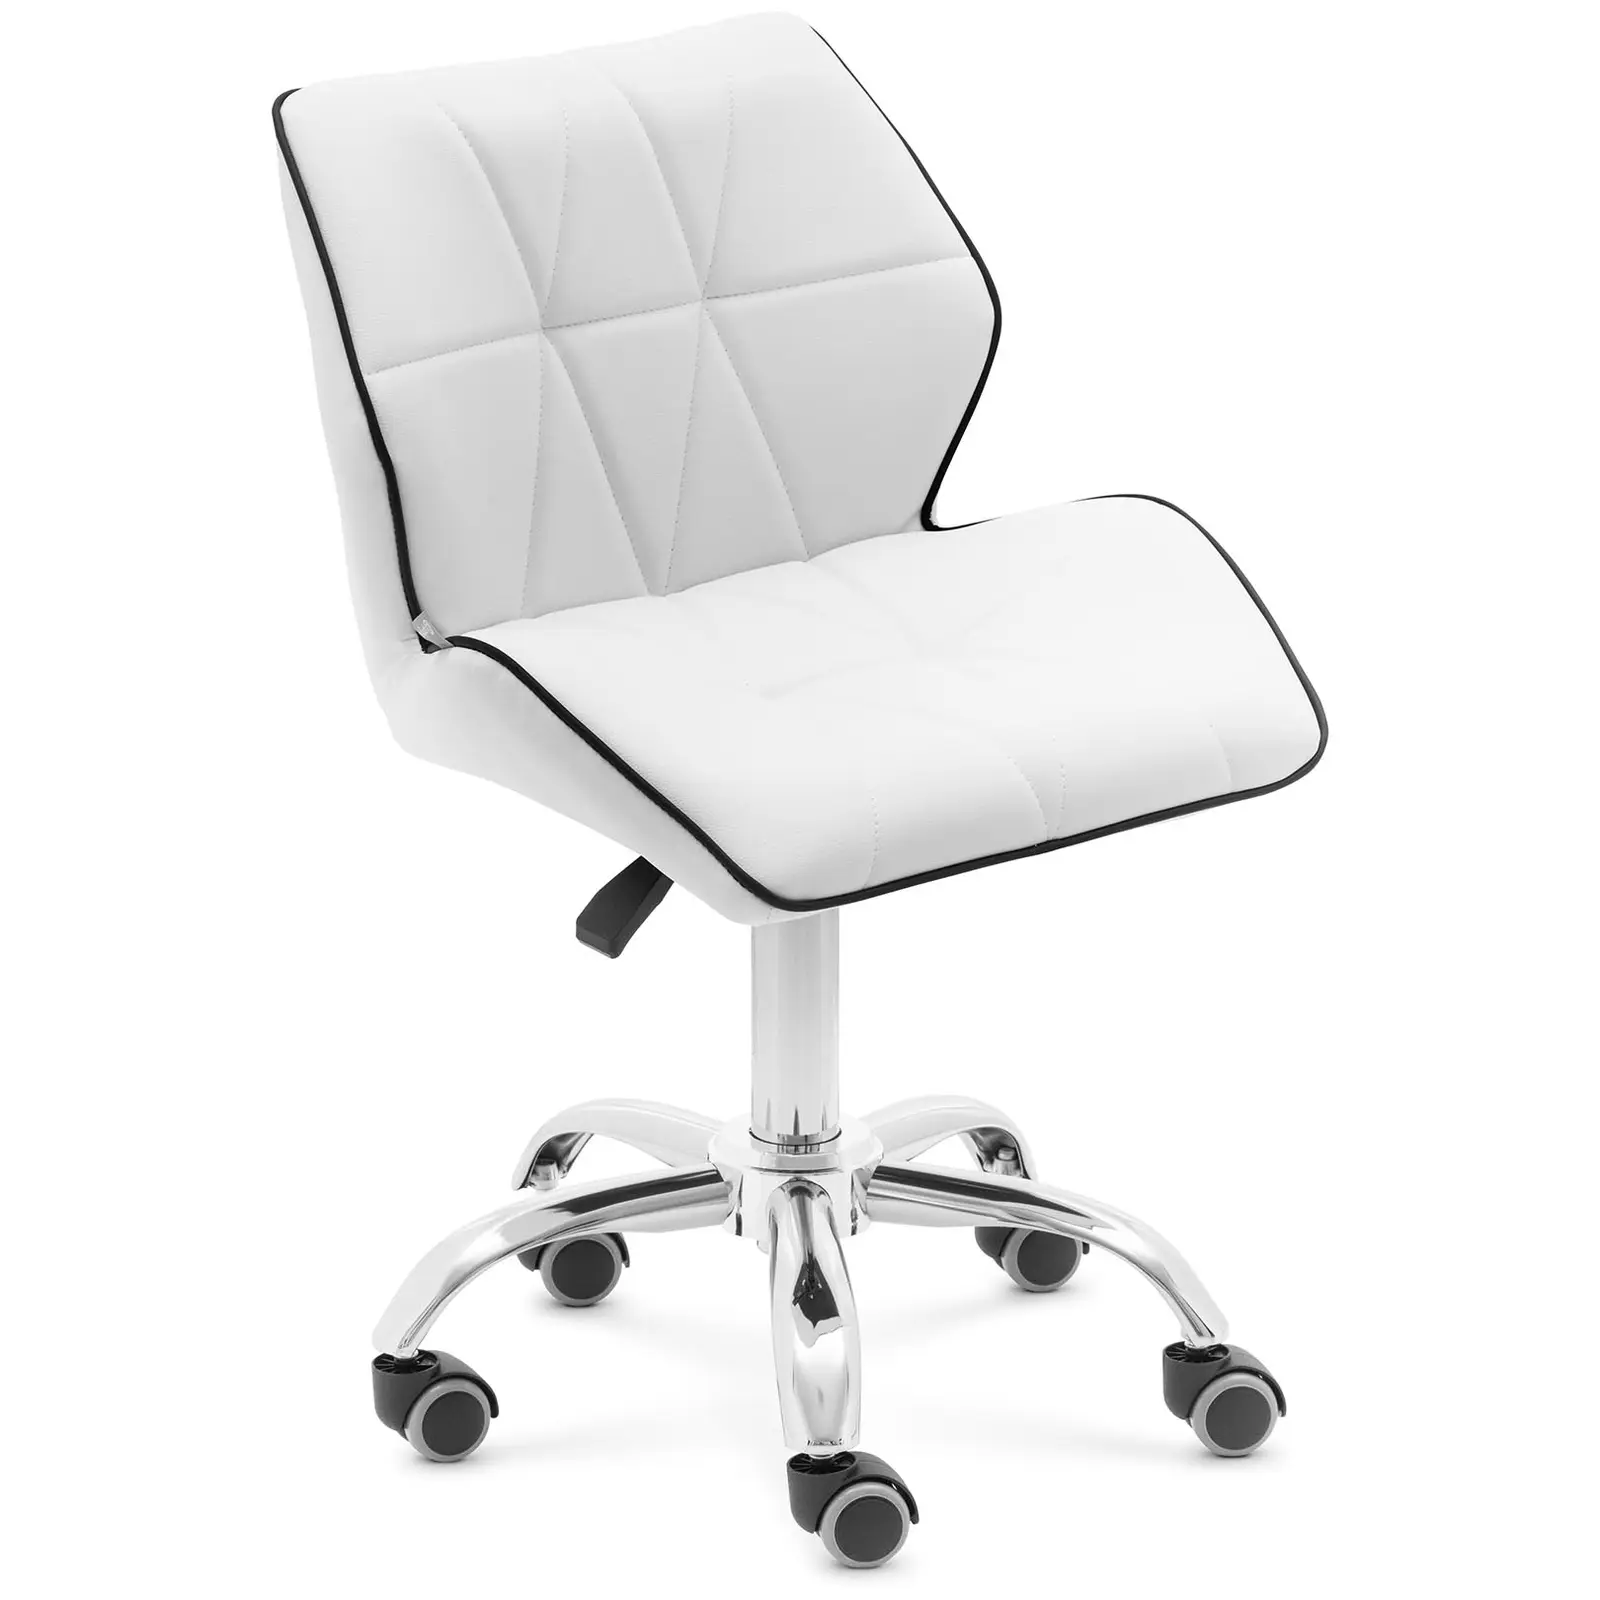 B-termék Gurulós szék háttámlával - 45–59 cm - 150 kg - fehér